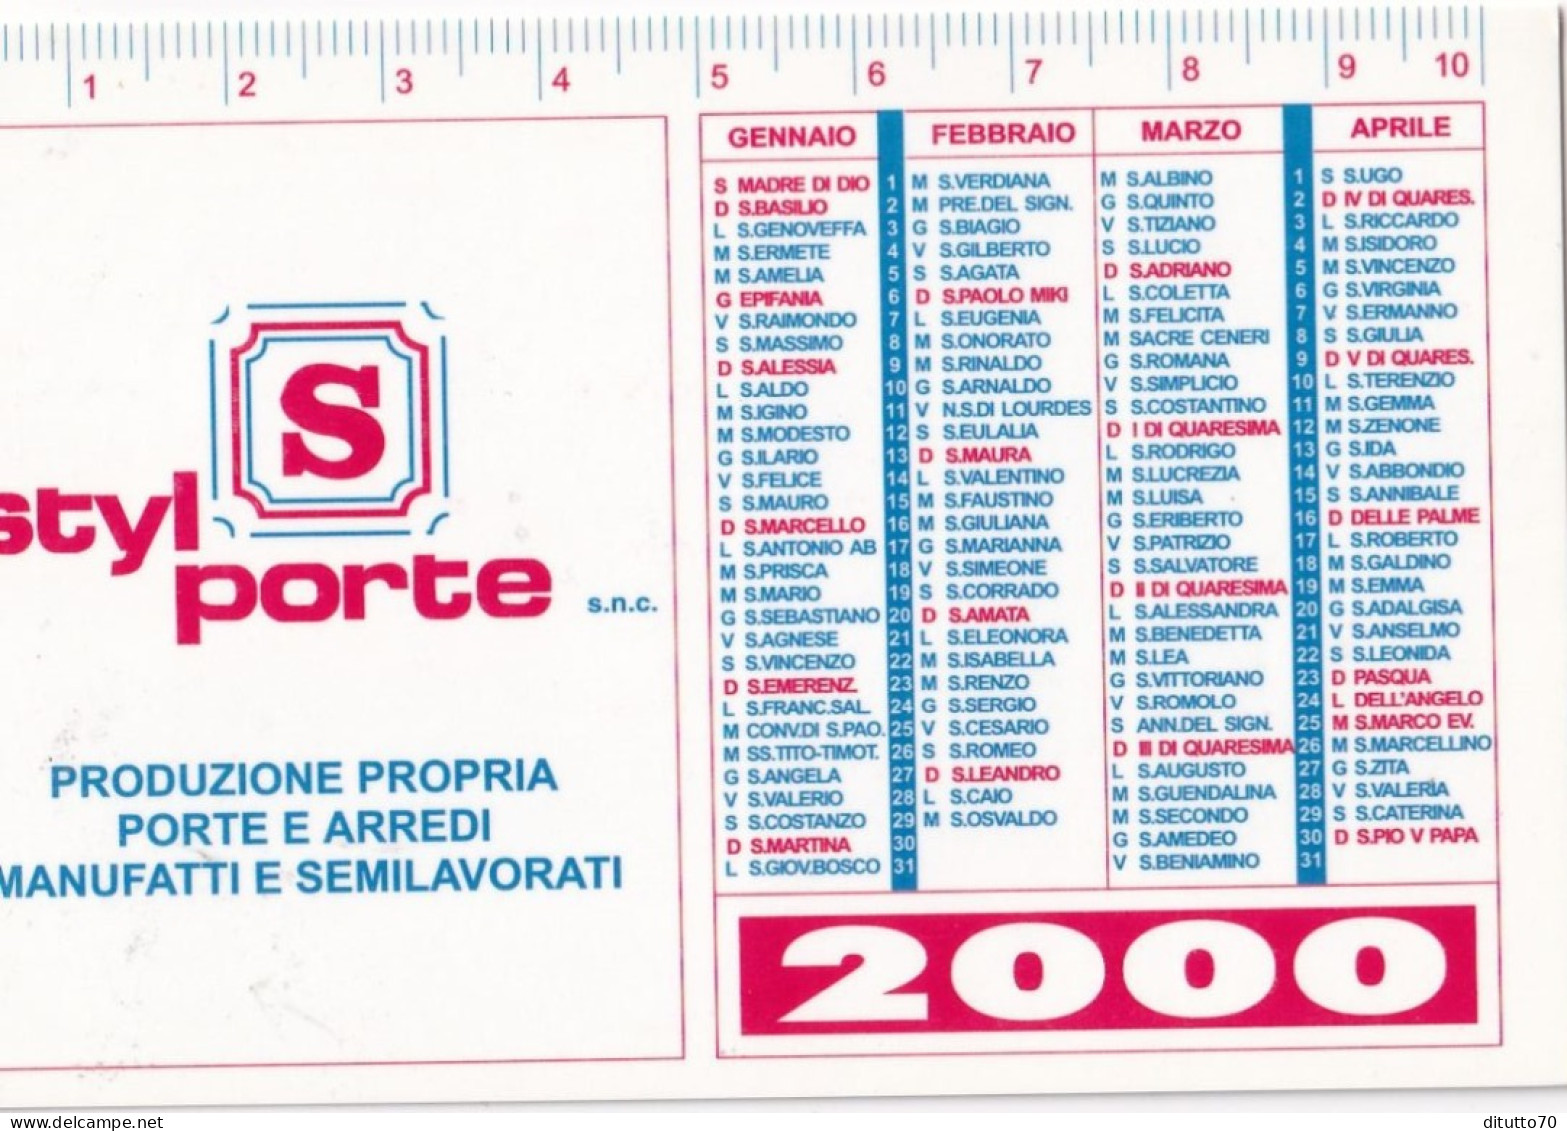 Calendarietto - Styl Porte - Rivalta - Torino - Anno 2000 - Small : 1991-00